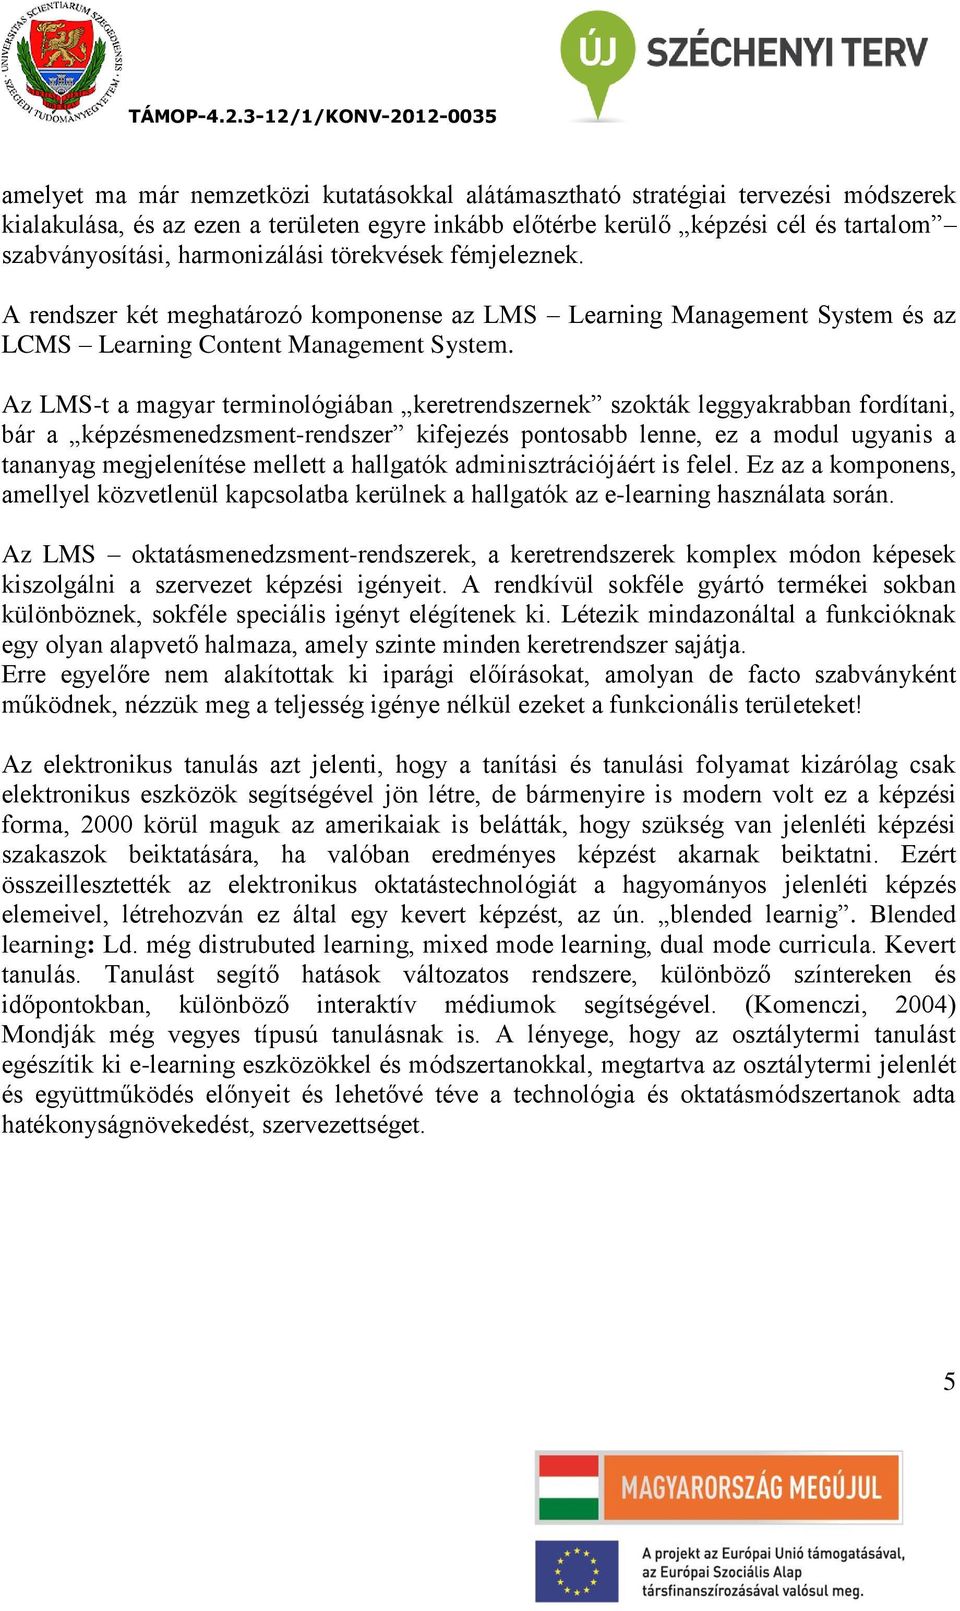 Az LMS-t a magyar terminológiában keretrendszernek szokták leggyakrabban fordítani, bár a képzésmenedzsment-rendszer kifejezés pontosabb lenne, ez a modul ugyanis a tananyag megjelenítése mellett a